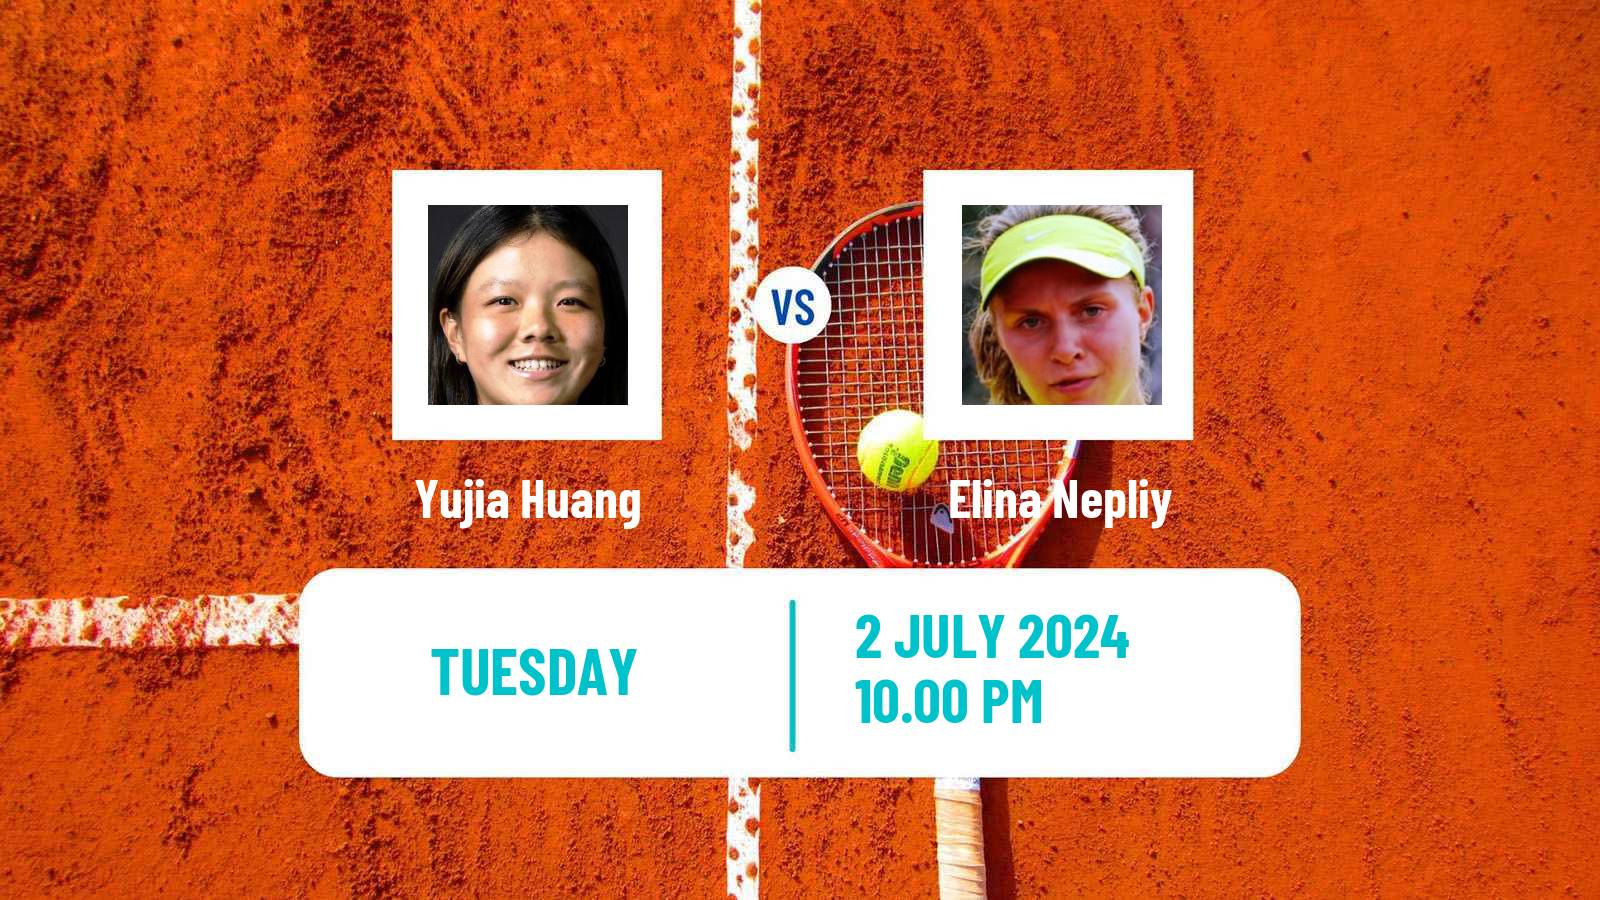 Tennis ITF W15 Tianjin 2 Women Yujia Huang - Elina Nepliy